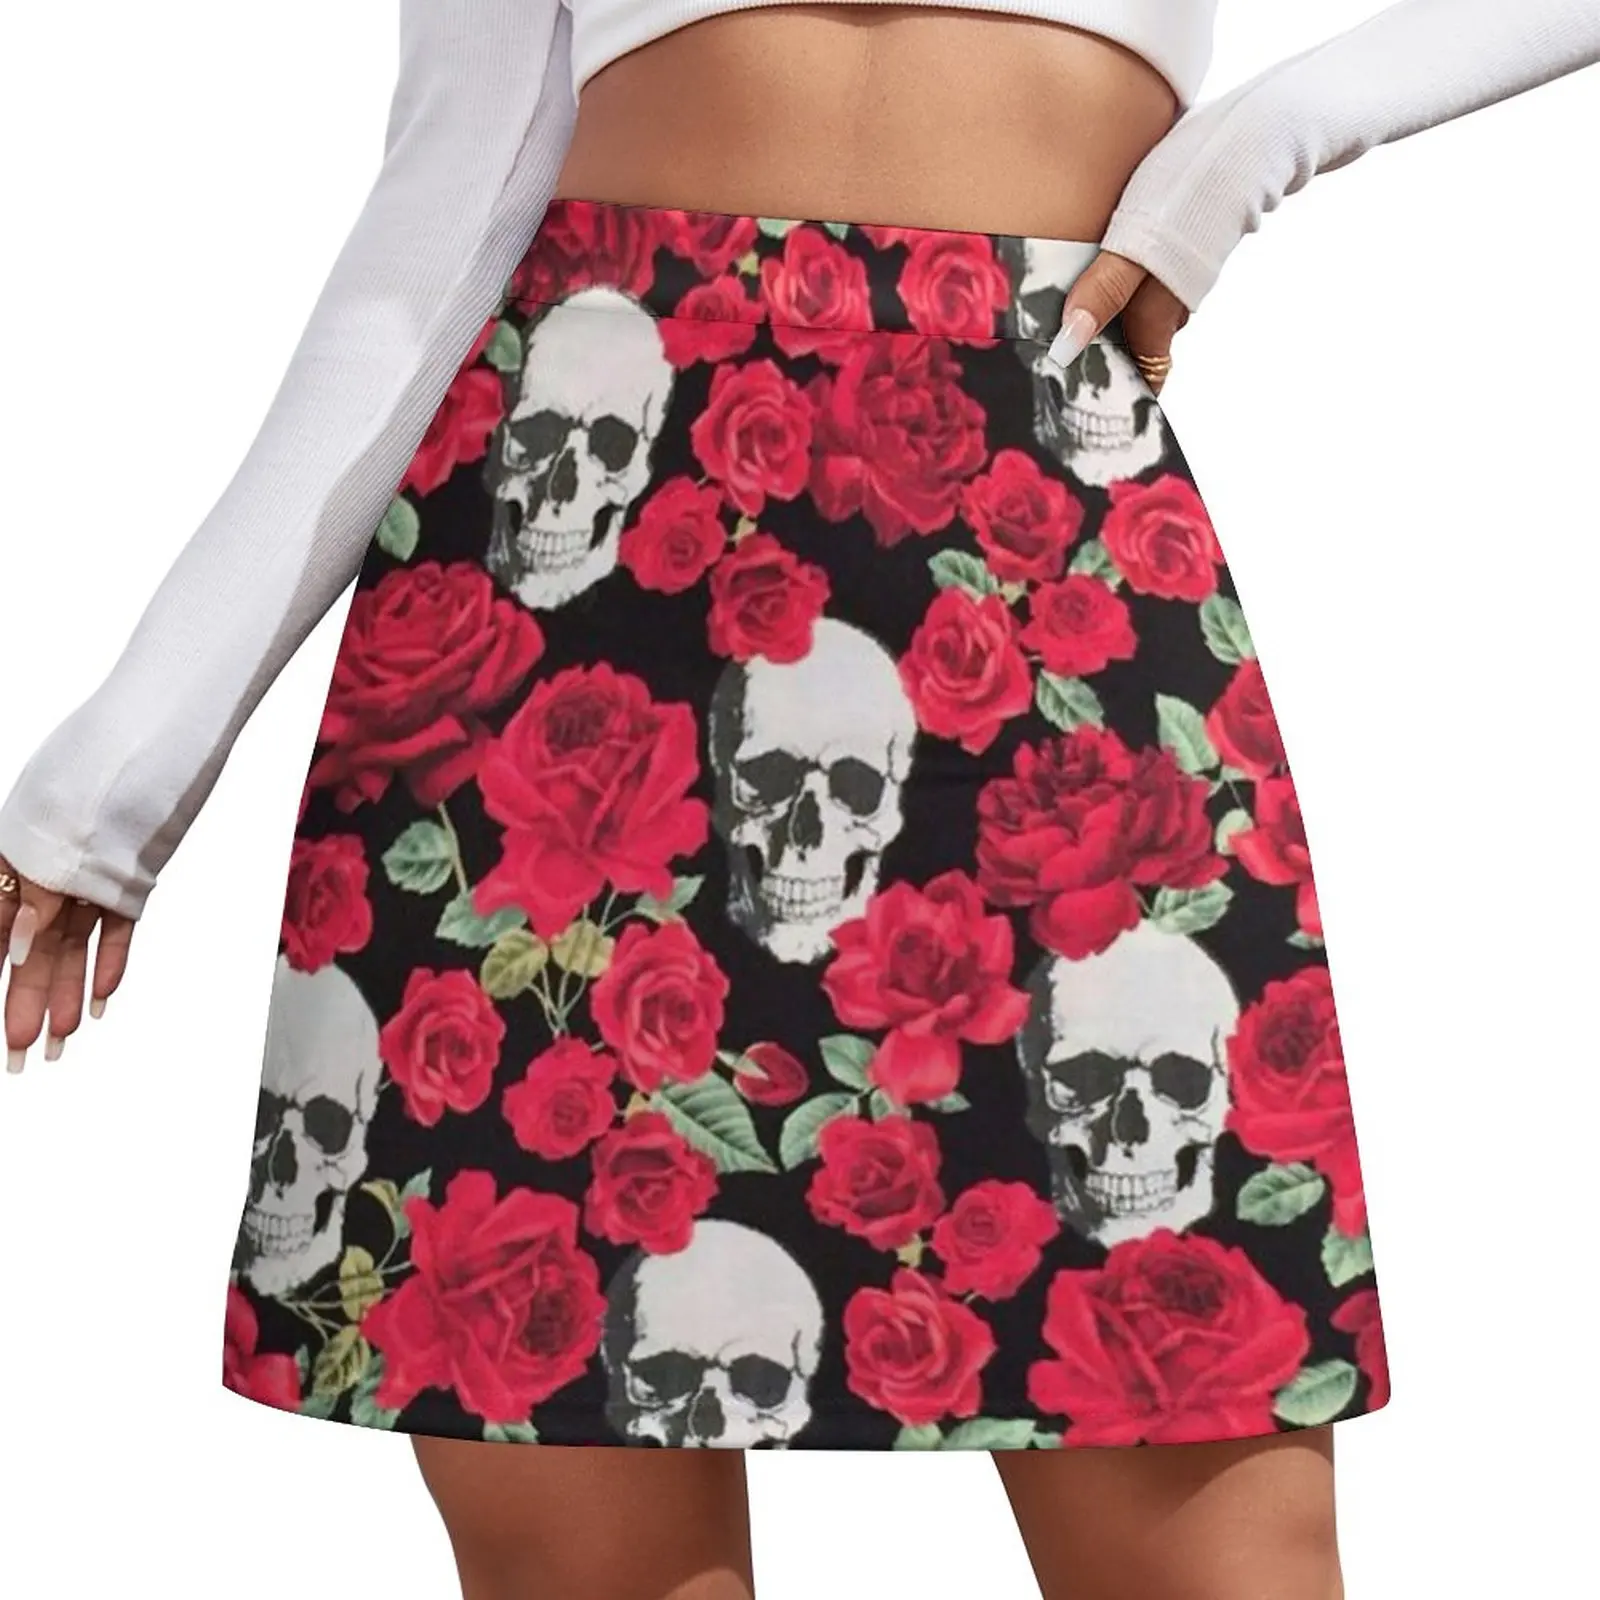 sevintage short red prom dresses for Skull & Roses Mini Skirt dresses for prom Short women′s skirts womens skirts